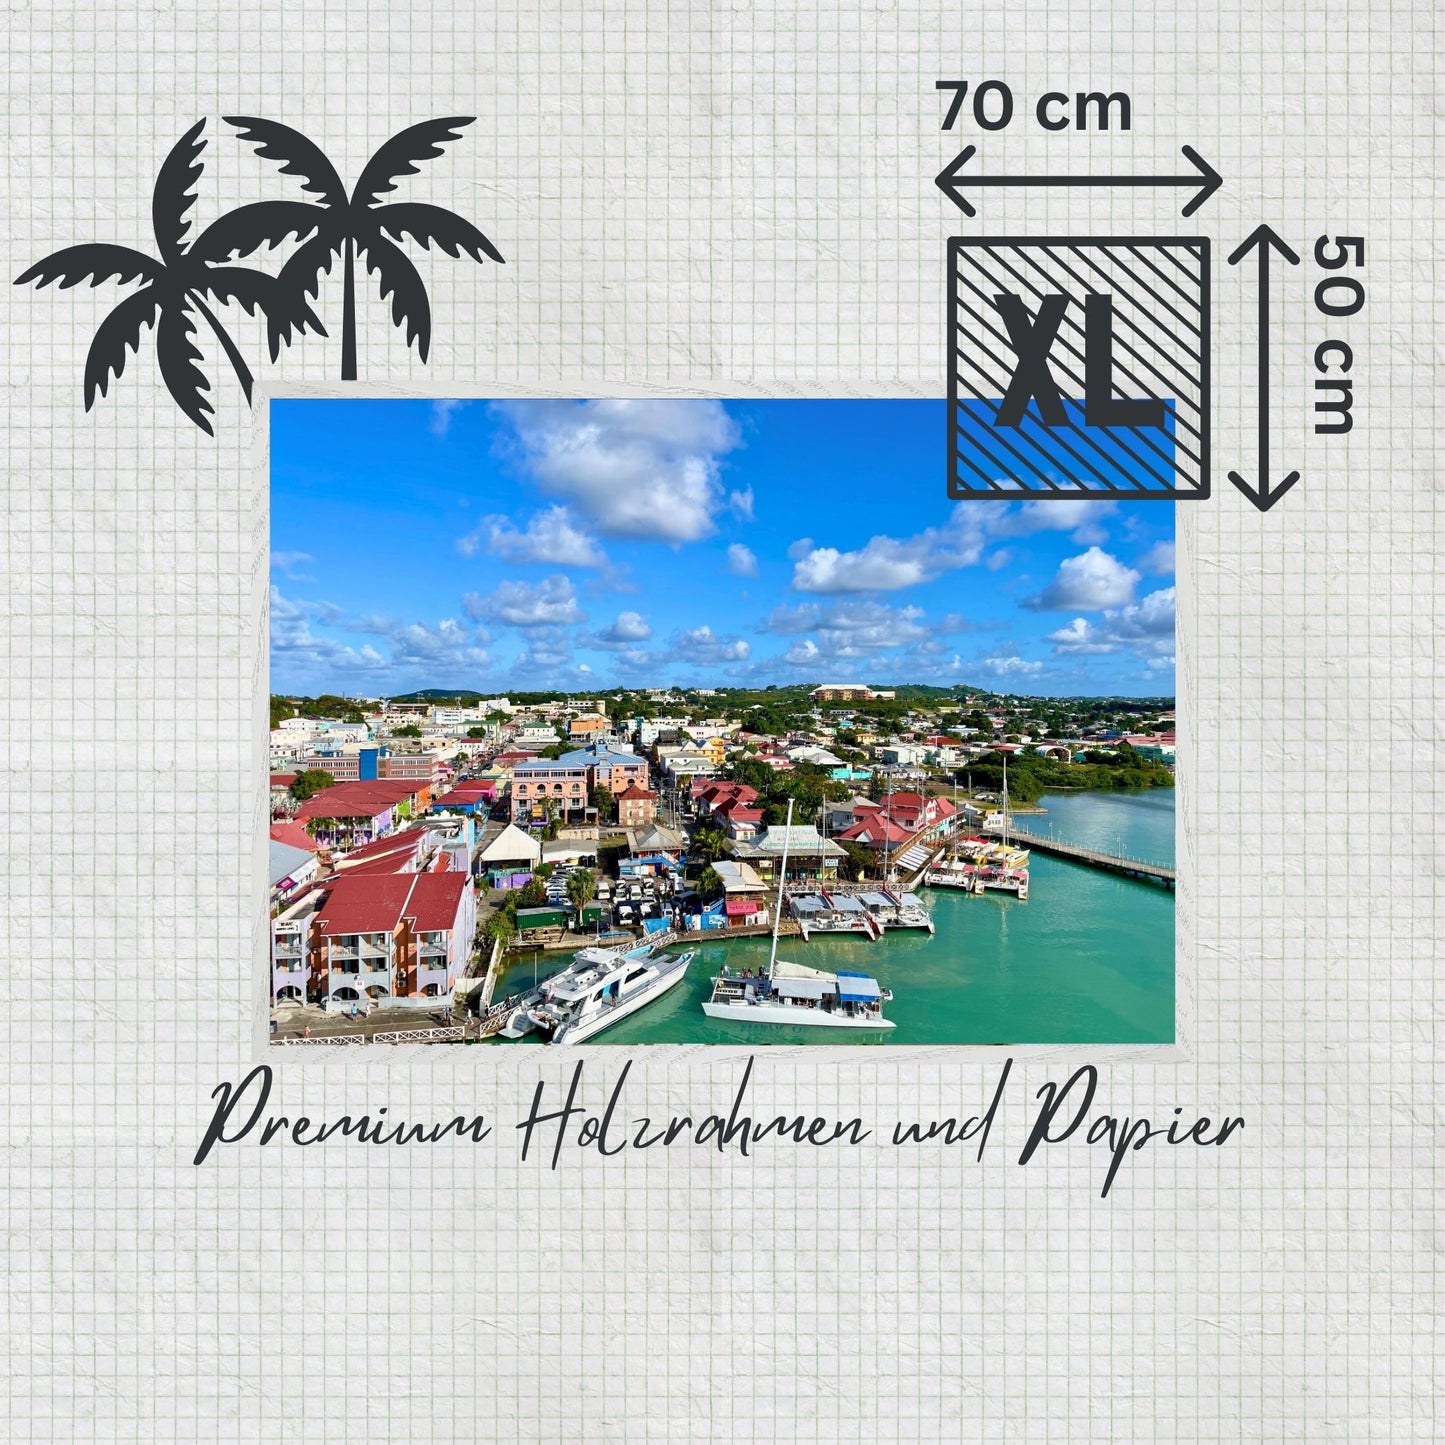 St. Johns - Sightseeing Panorama Kunstwerkabmessung Paradiesfoto aus der Karibik